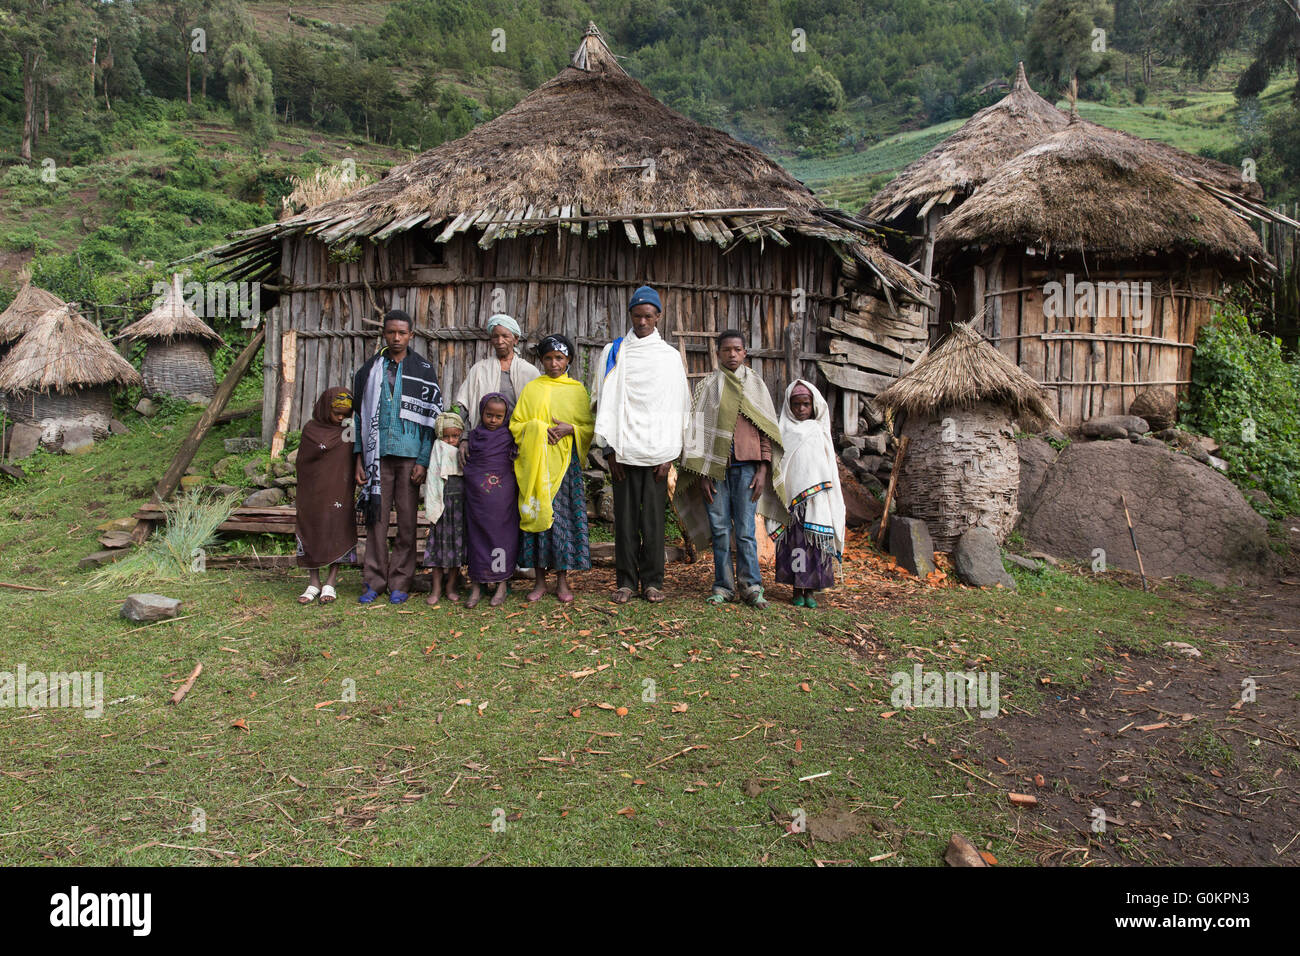 Wofwasha, Äthiopien, 2013: Hailemariam Woldoyohanus, 37, und seine Frau Zenobich und die erweiterte Familiengruppe. Stockfoto